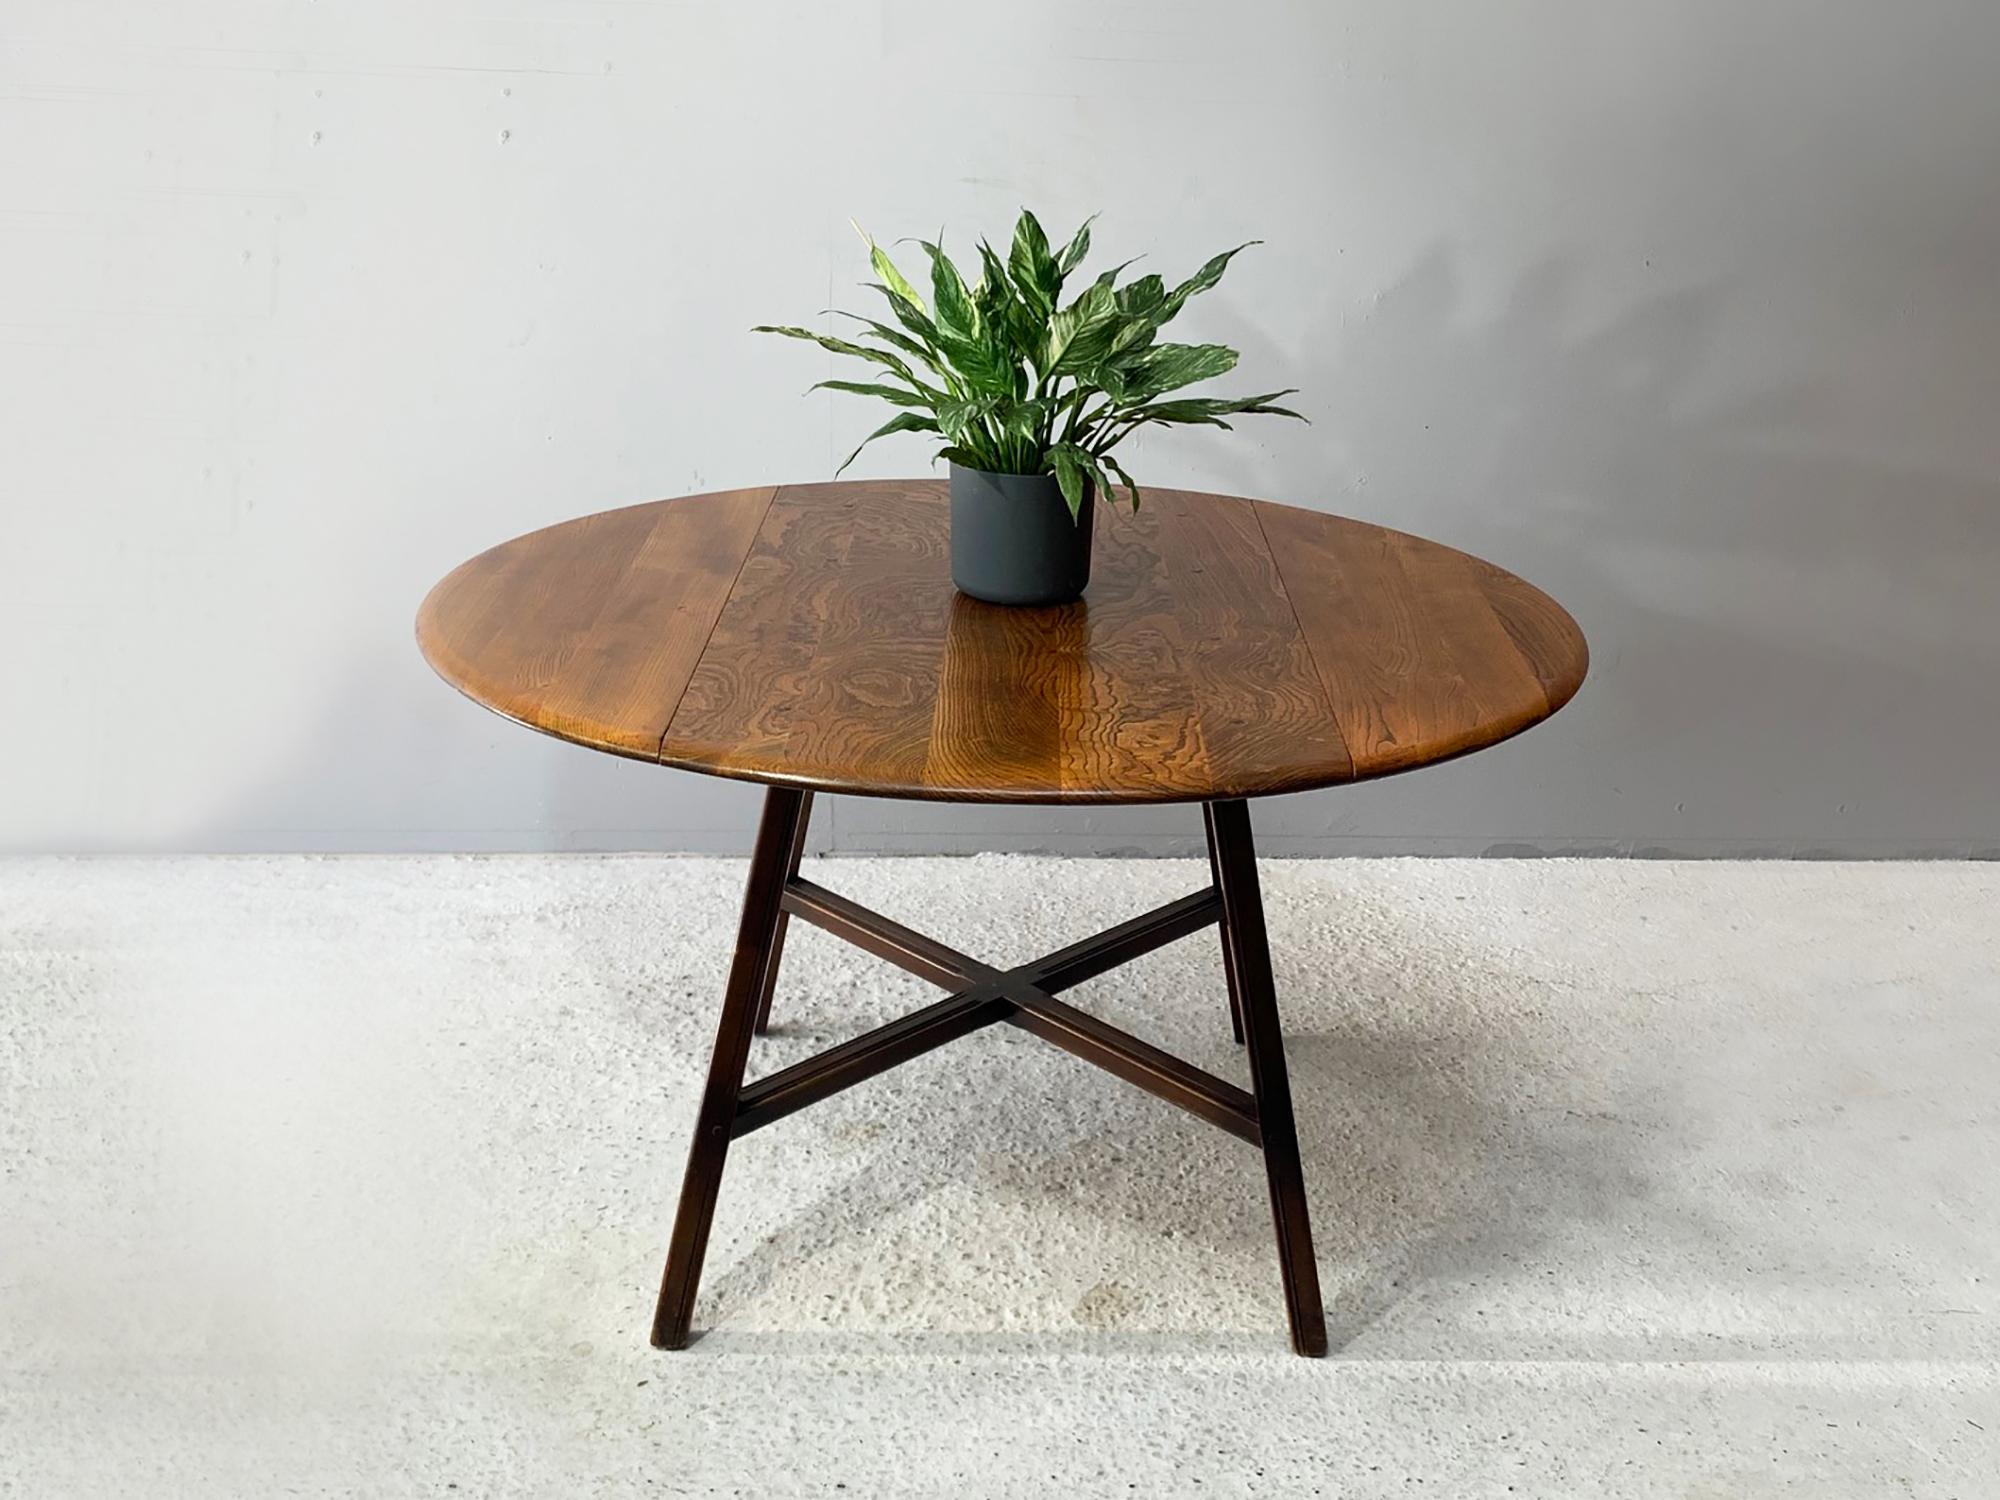 Der von Lucian R. Ercolani entworfene Ercol Old Colonial Tisch ist ein früheres und selteneres Design als die neueren Ercol Tische. Er wurde in den 1960er Jahren hergestellt und trägt das 